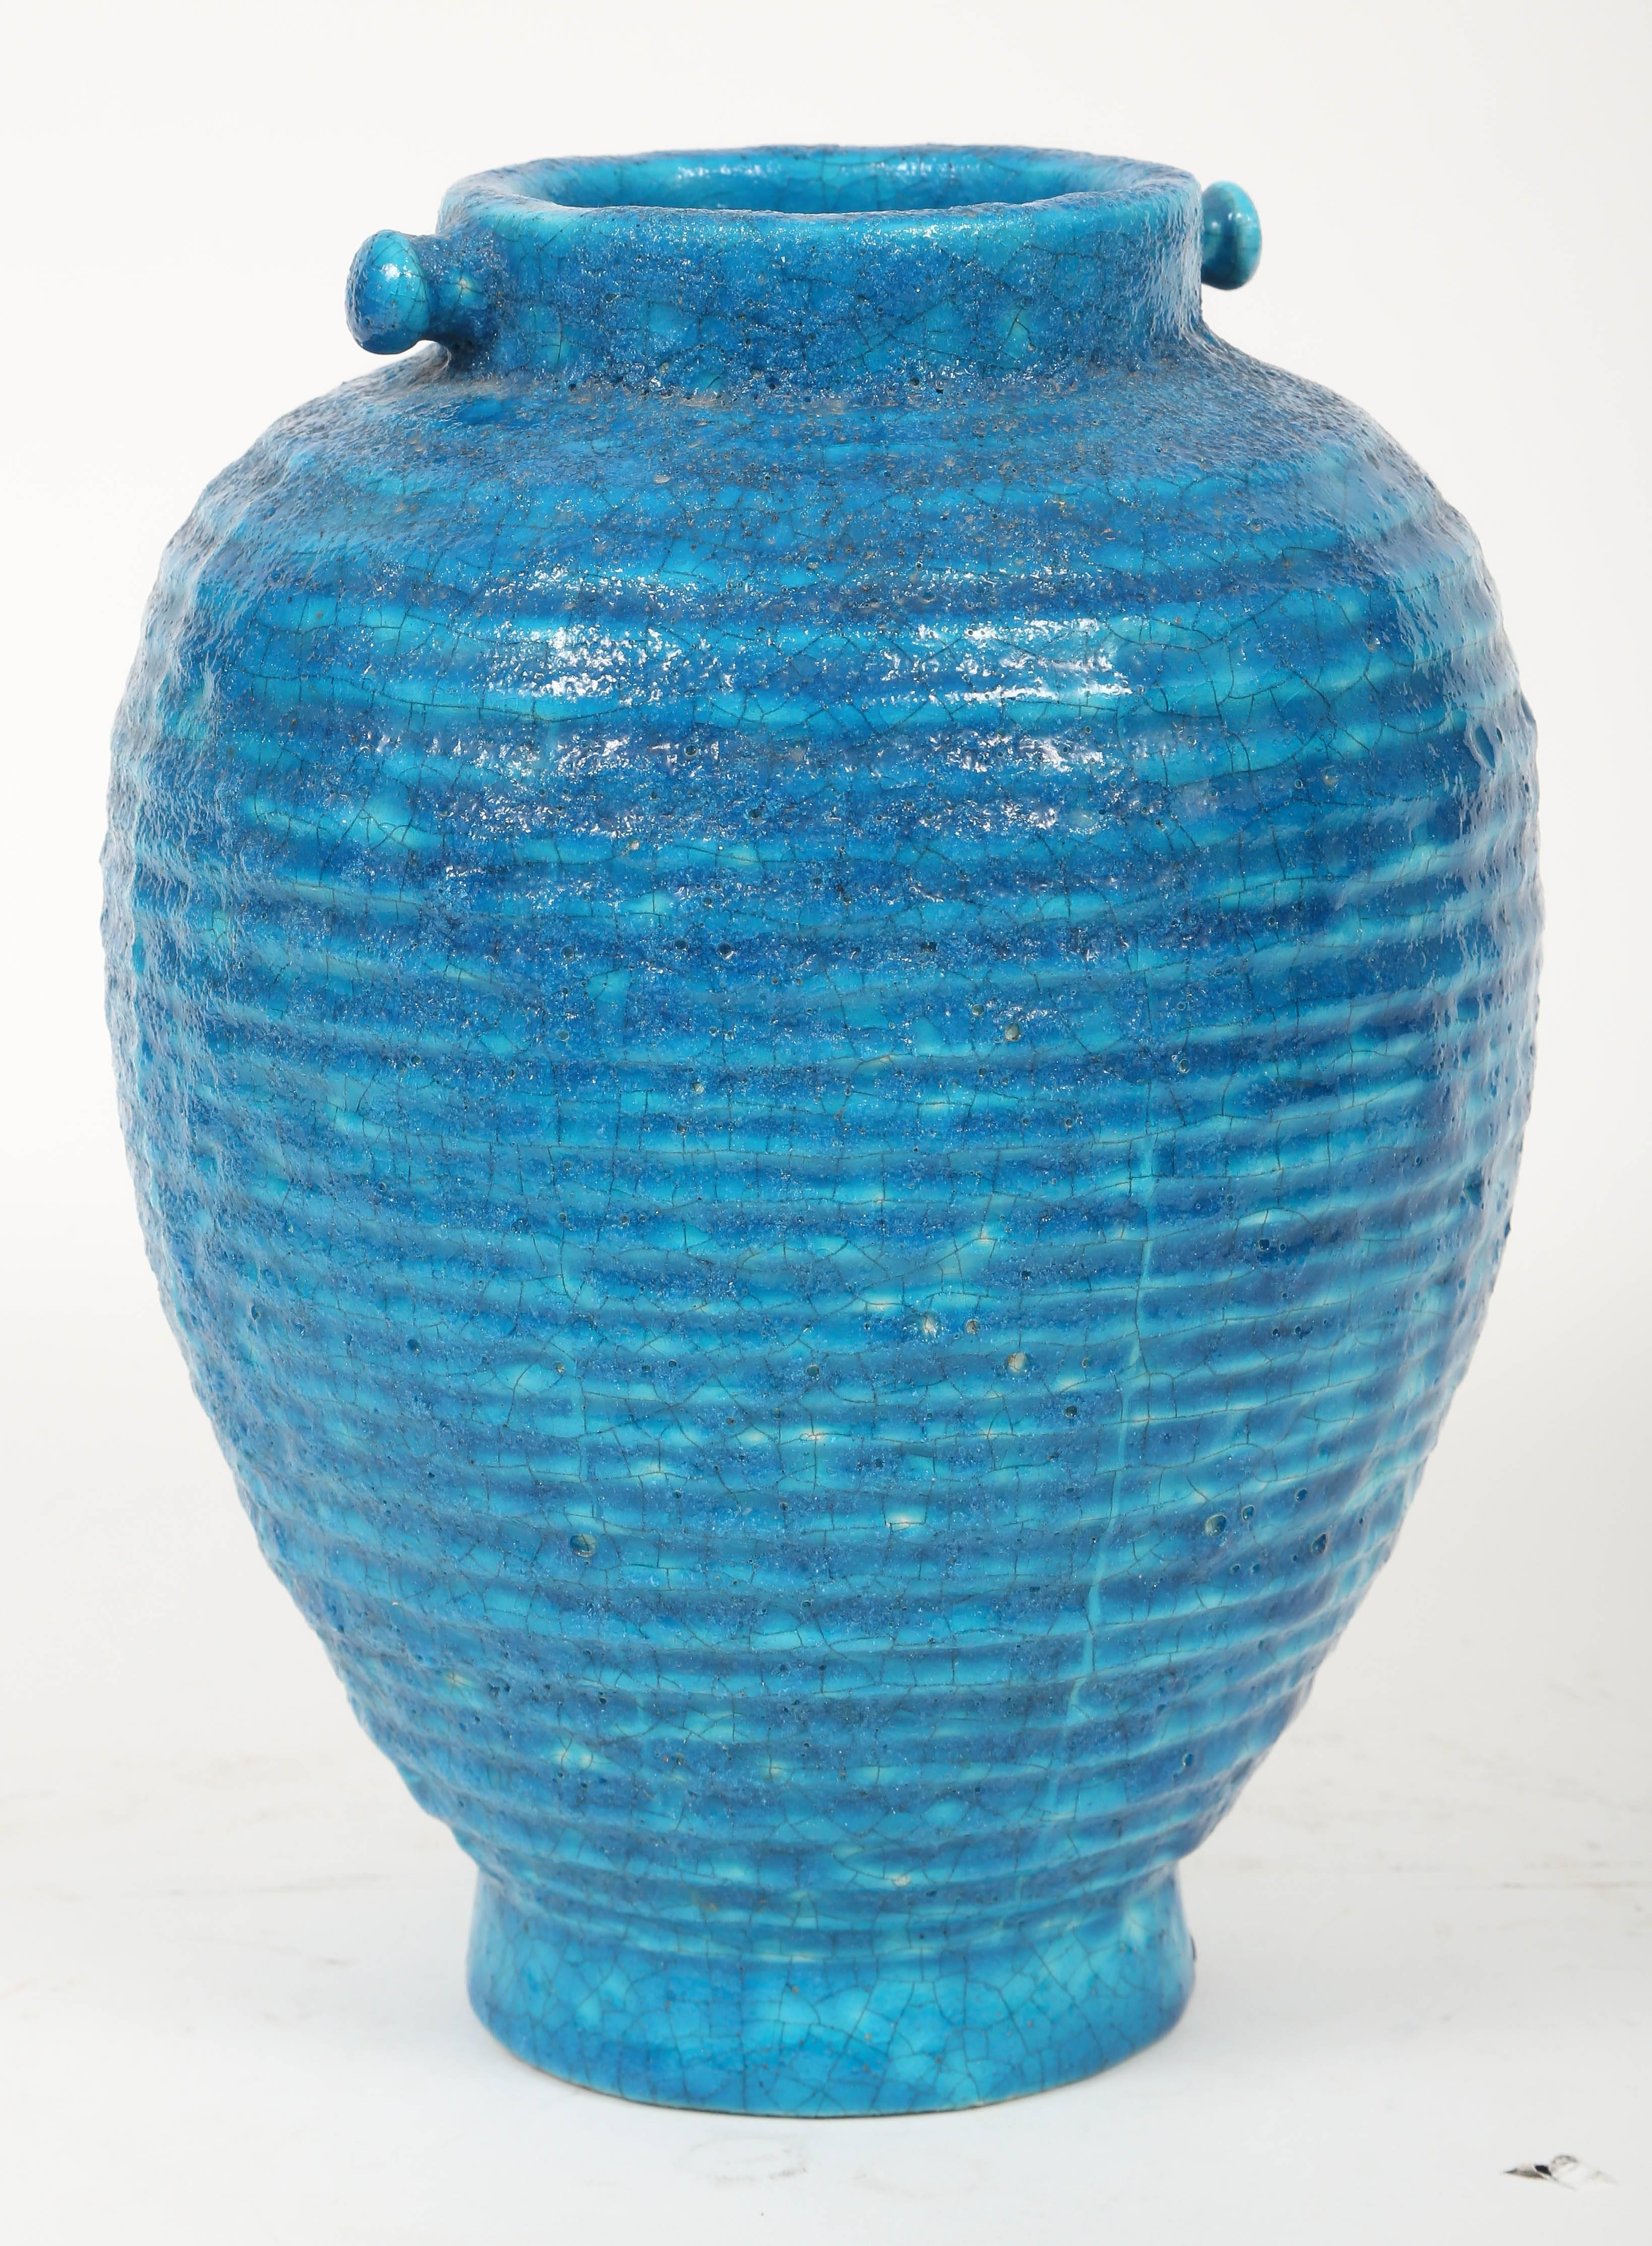 Ungewöhnliche gerippte Lachenal-Vase mit dekorativen Pfosten am Rand. Signiert LACHENAL auf der Unterseite, teilweise verdeckt durch die letzte Verglasung.